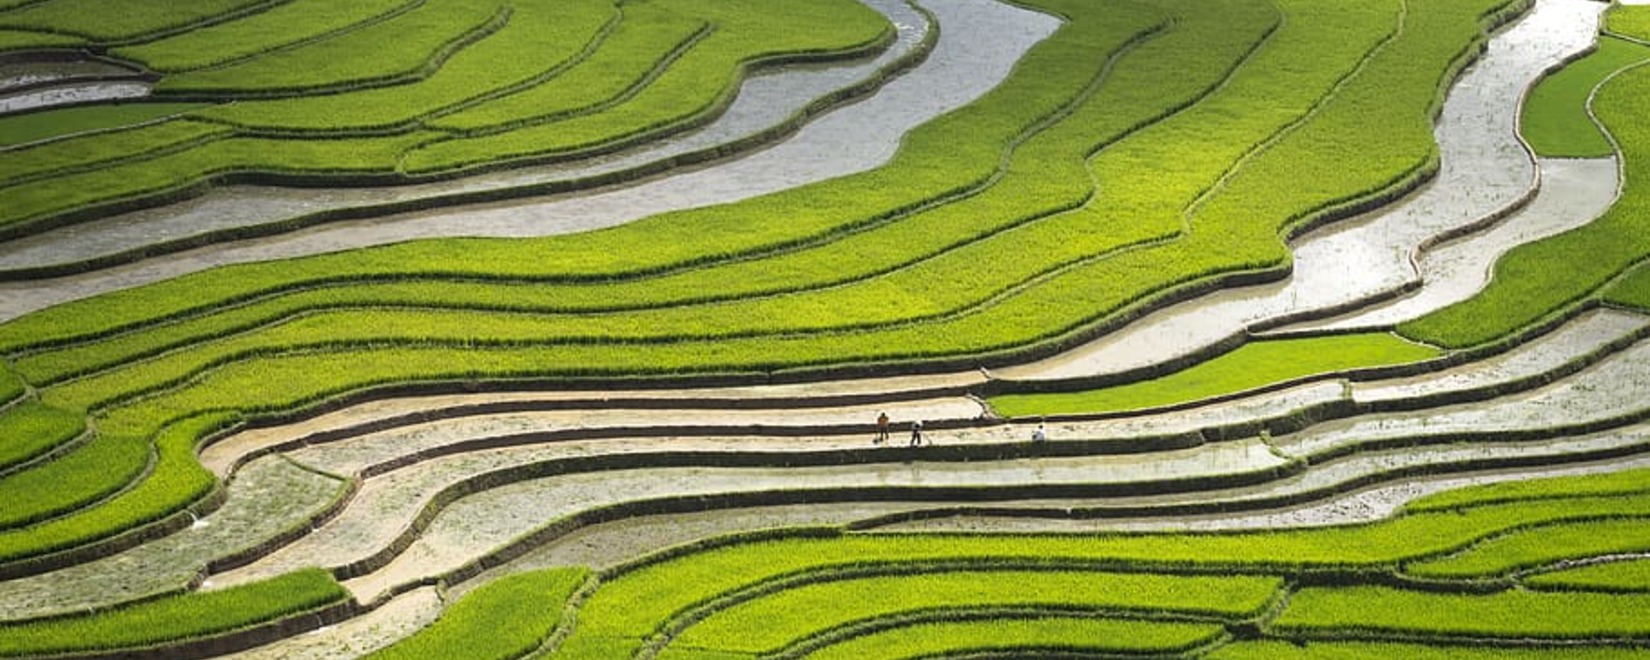 中国和印度正在积极引进水稻直播